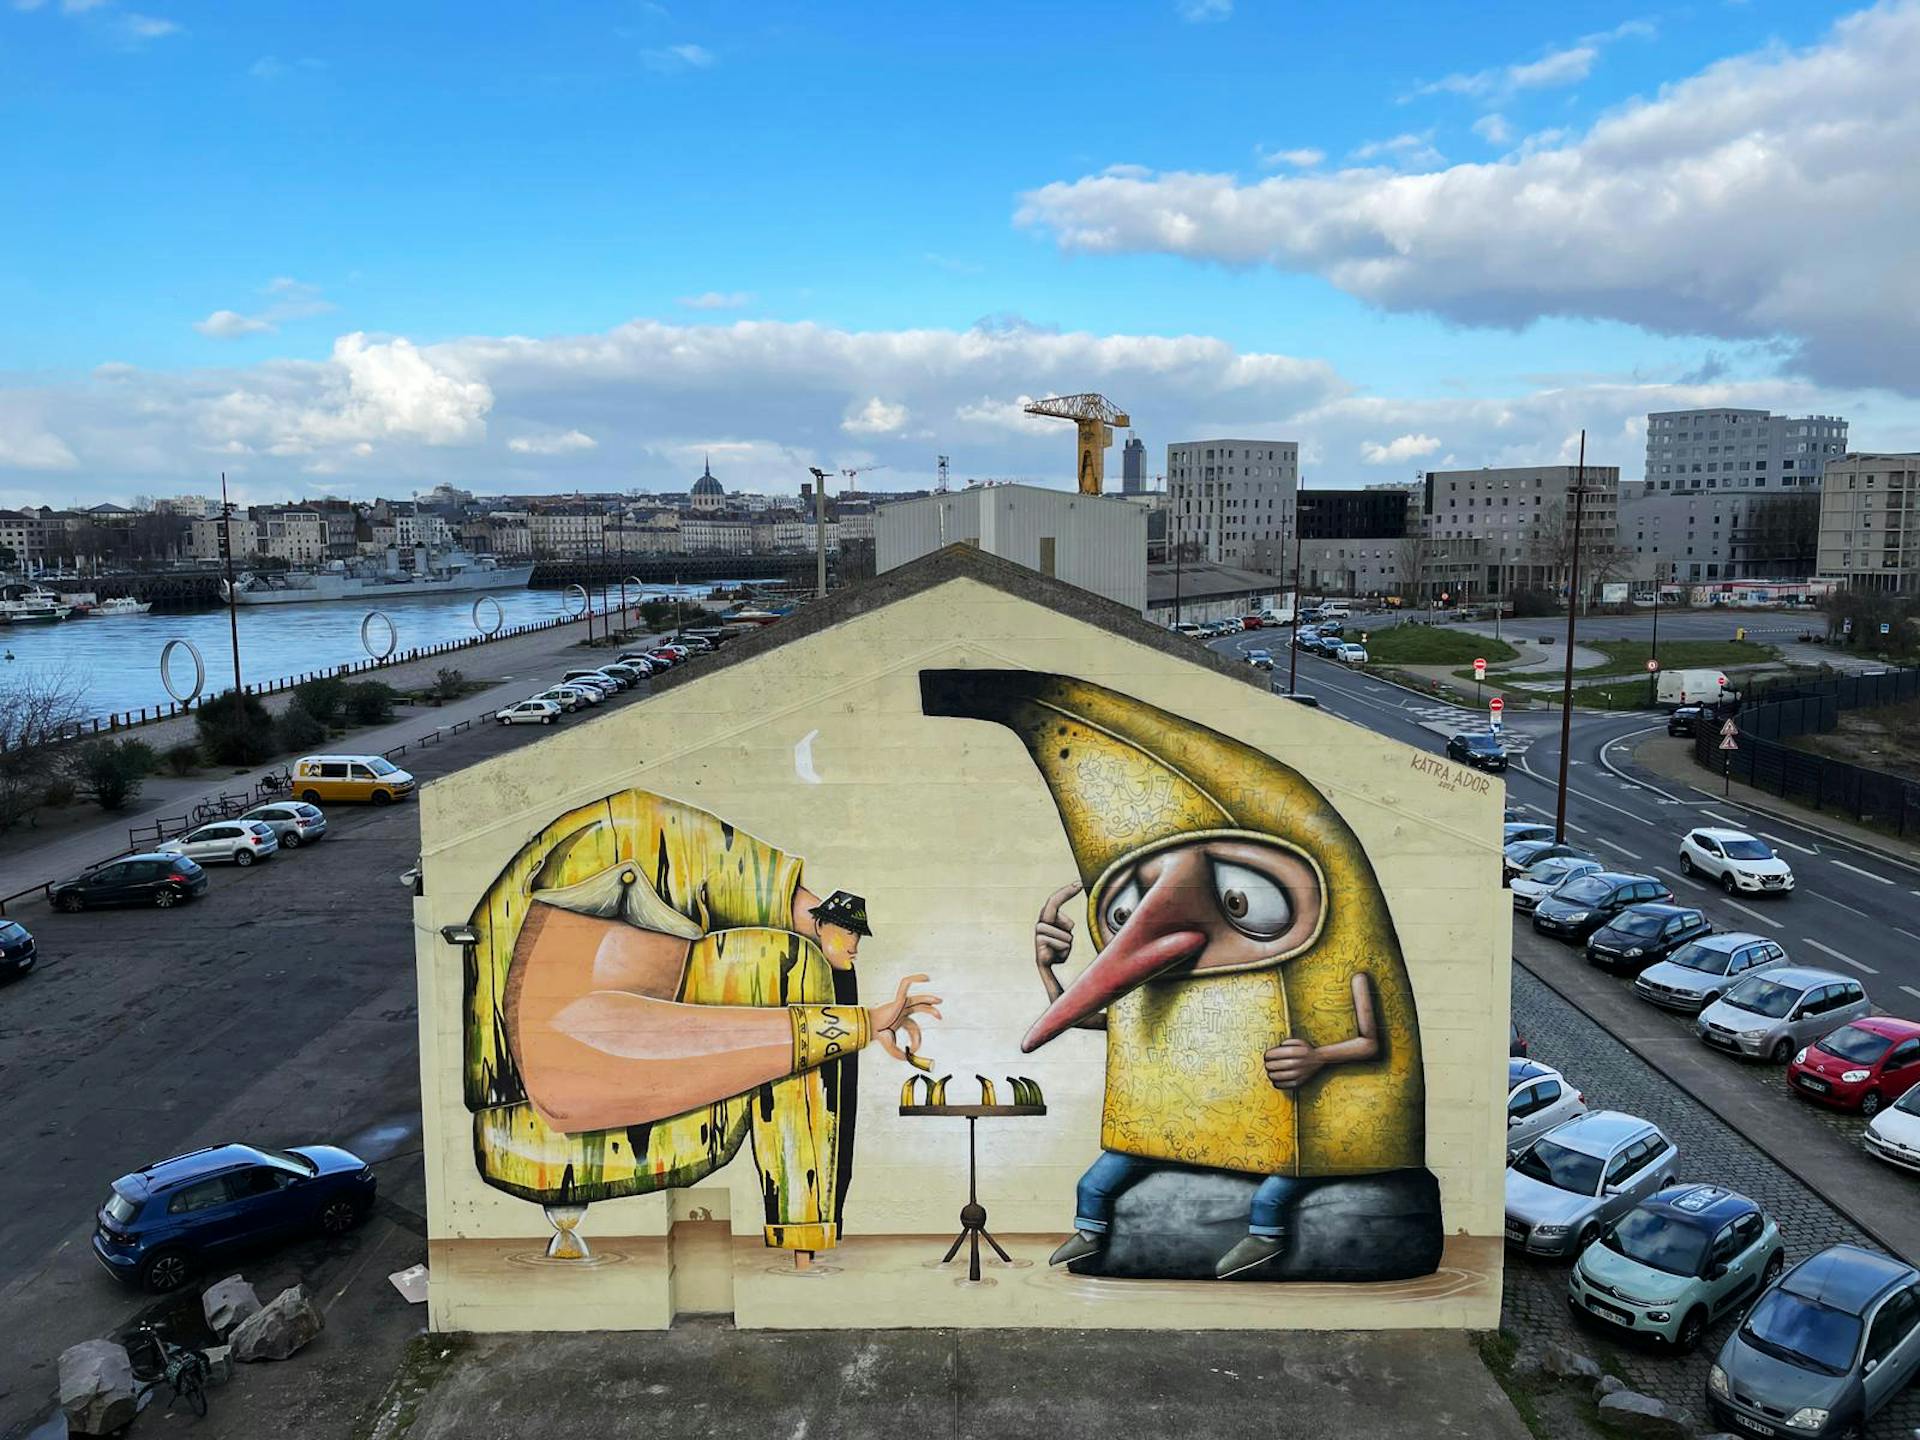 Prise de vue aérienne du projet "Une partie de banane" réalisé sur l'Île de Nantes par les artistes streetart nantais.